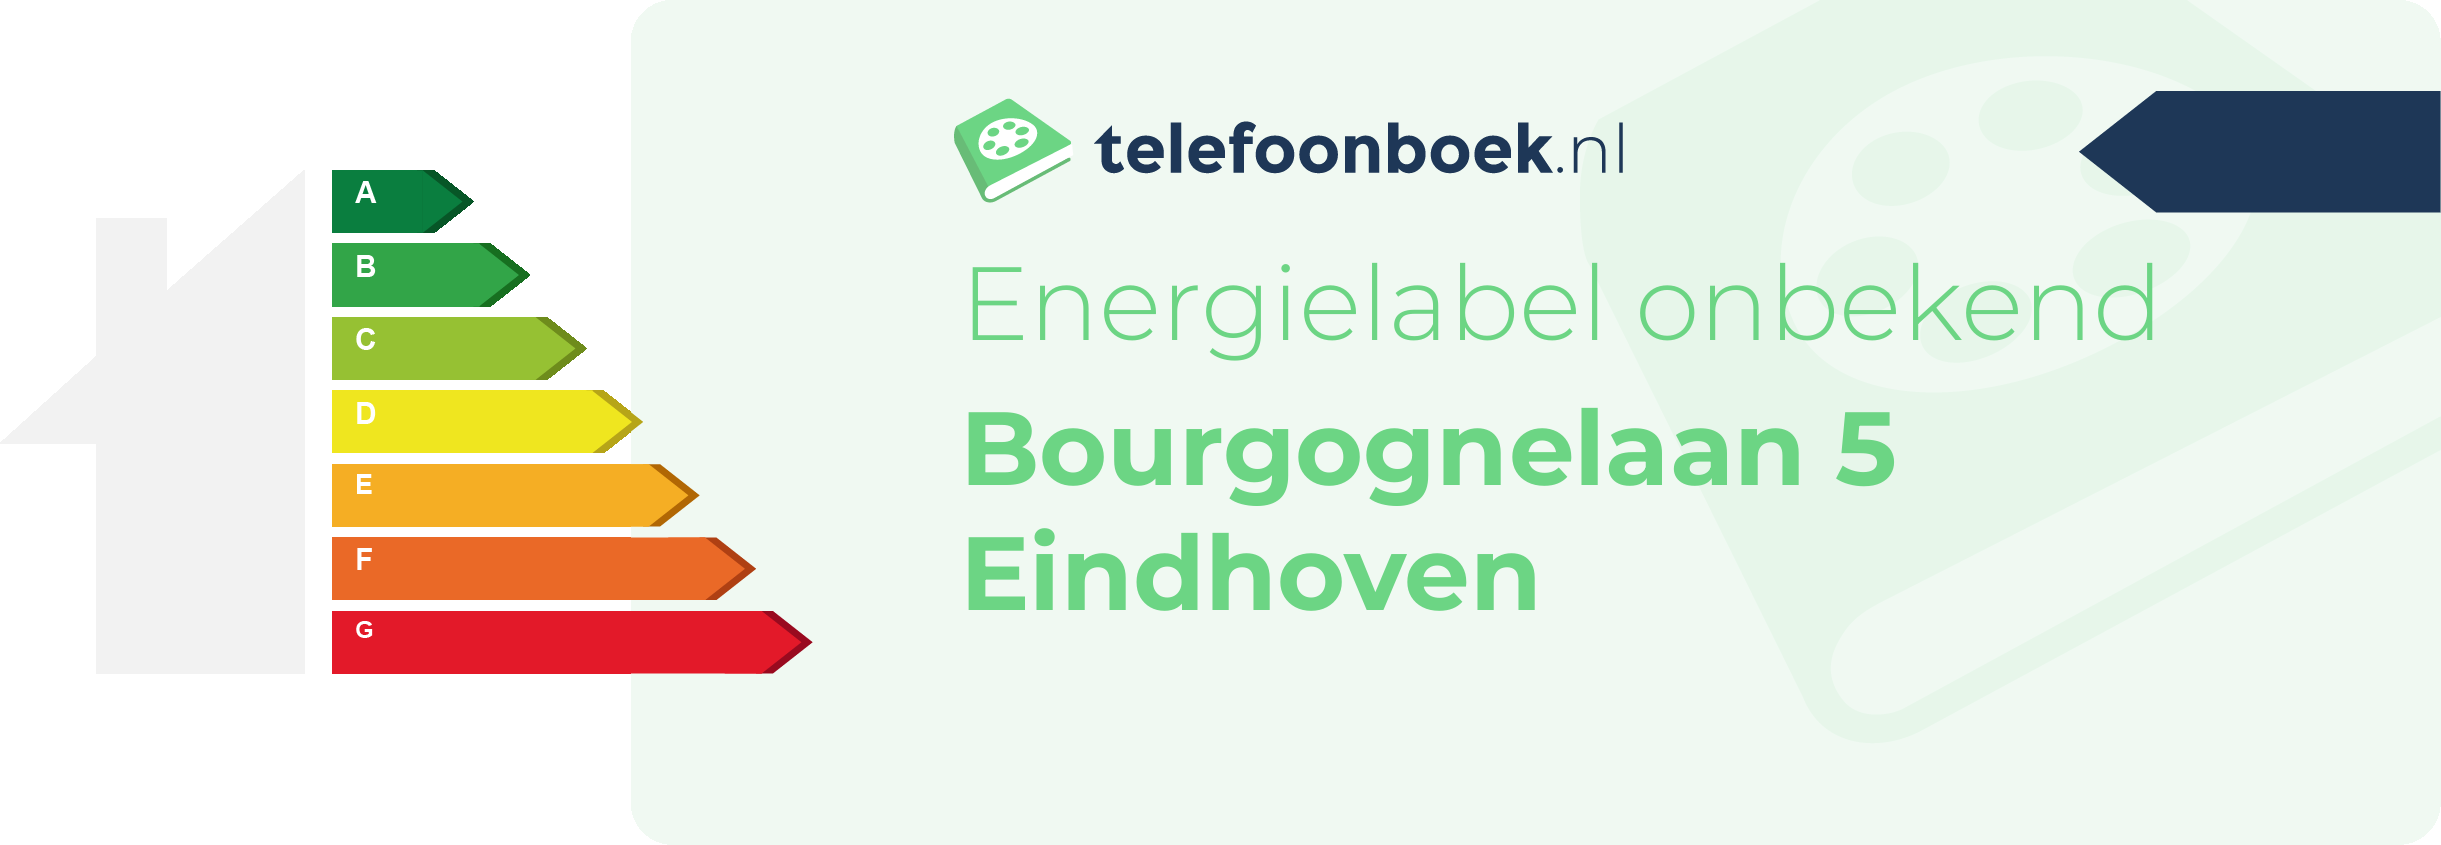 Energielabel Bourgognelaan 5 Eindhoven